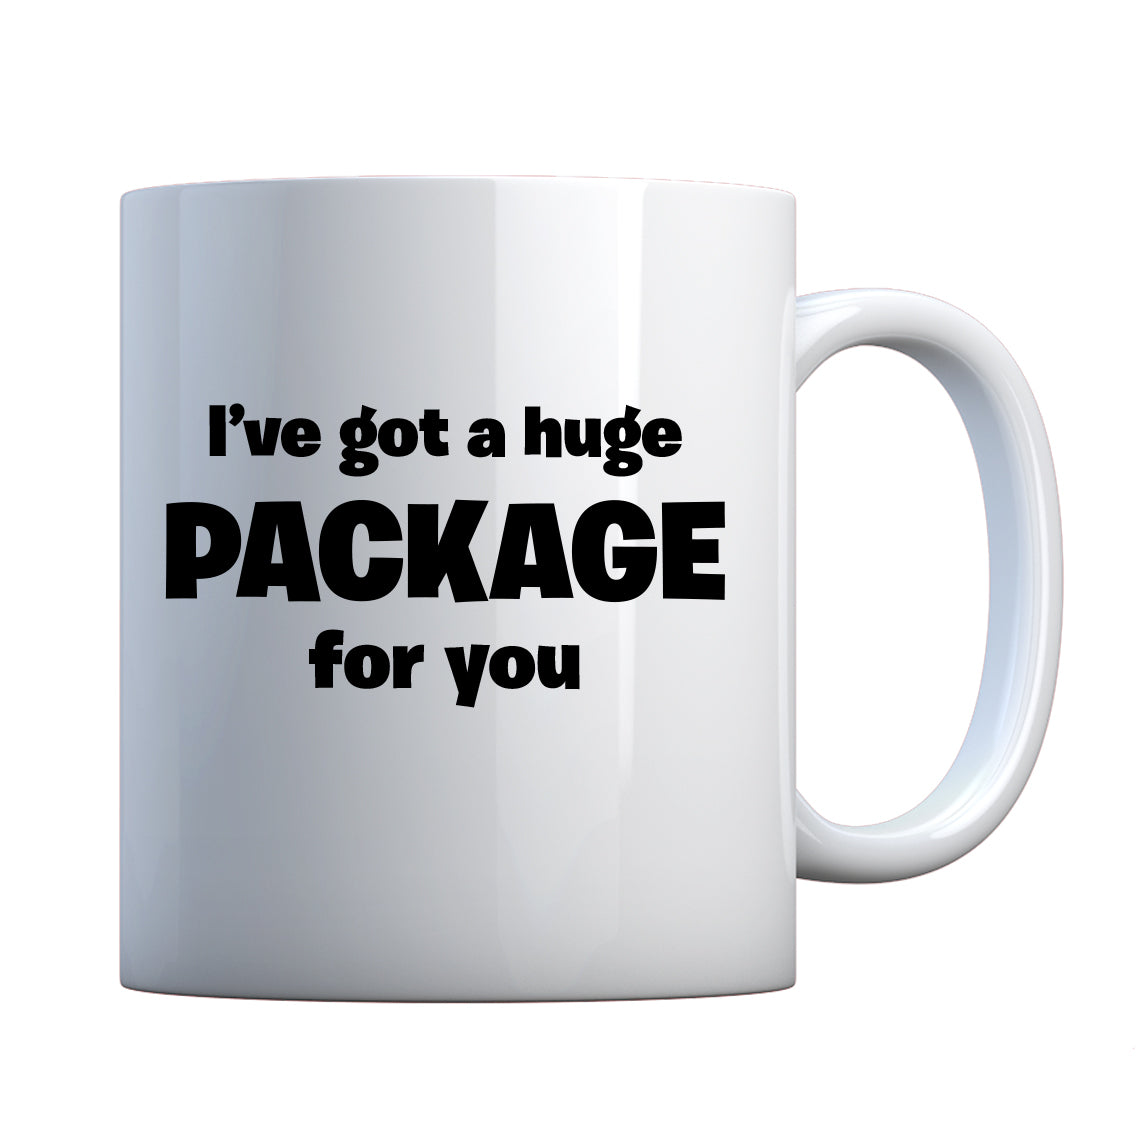 I've got a huge package for you. Ceramic Gift Mug